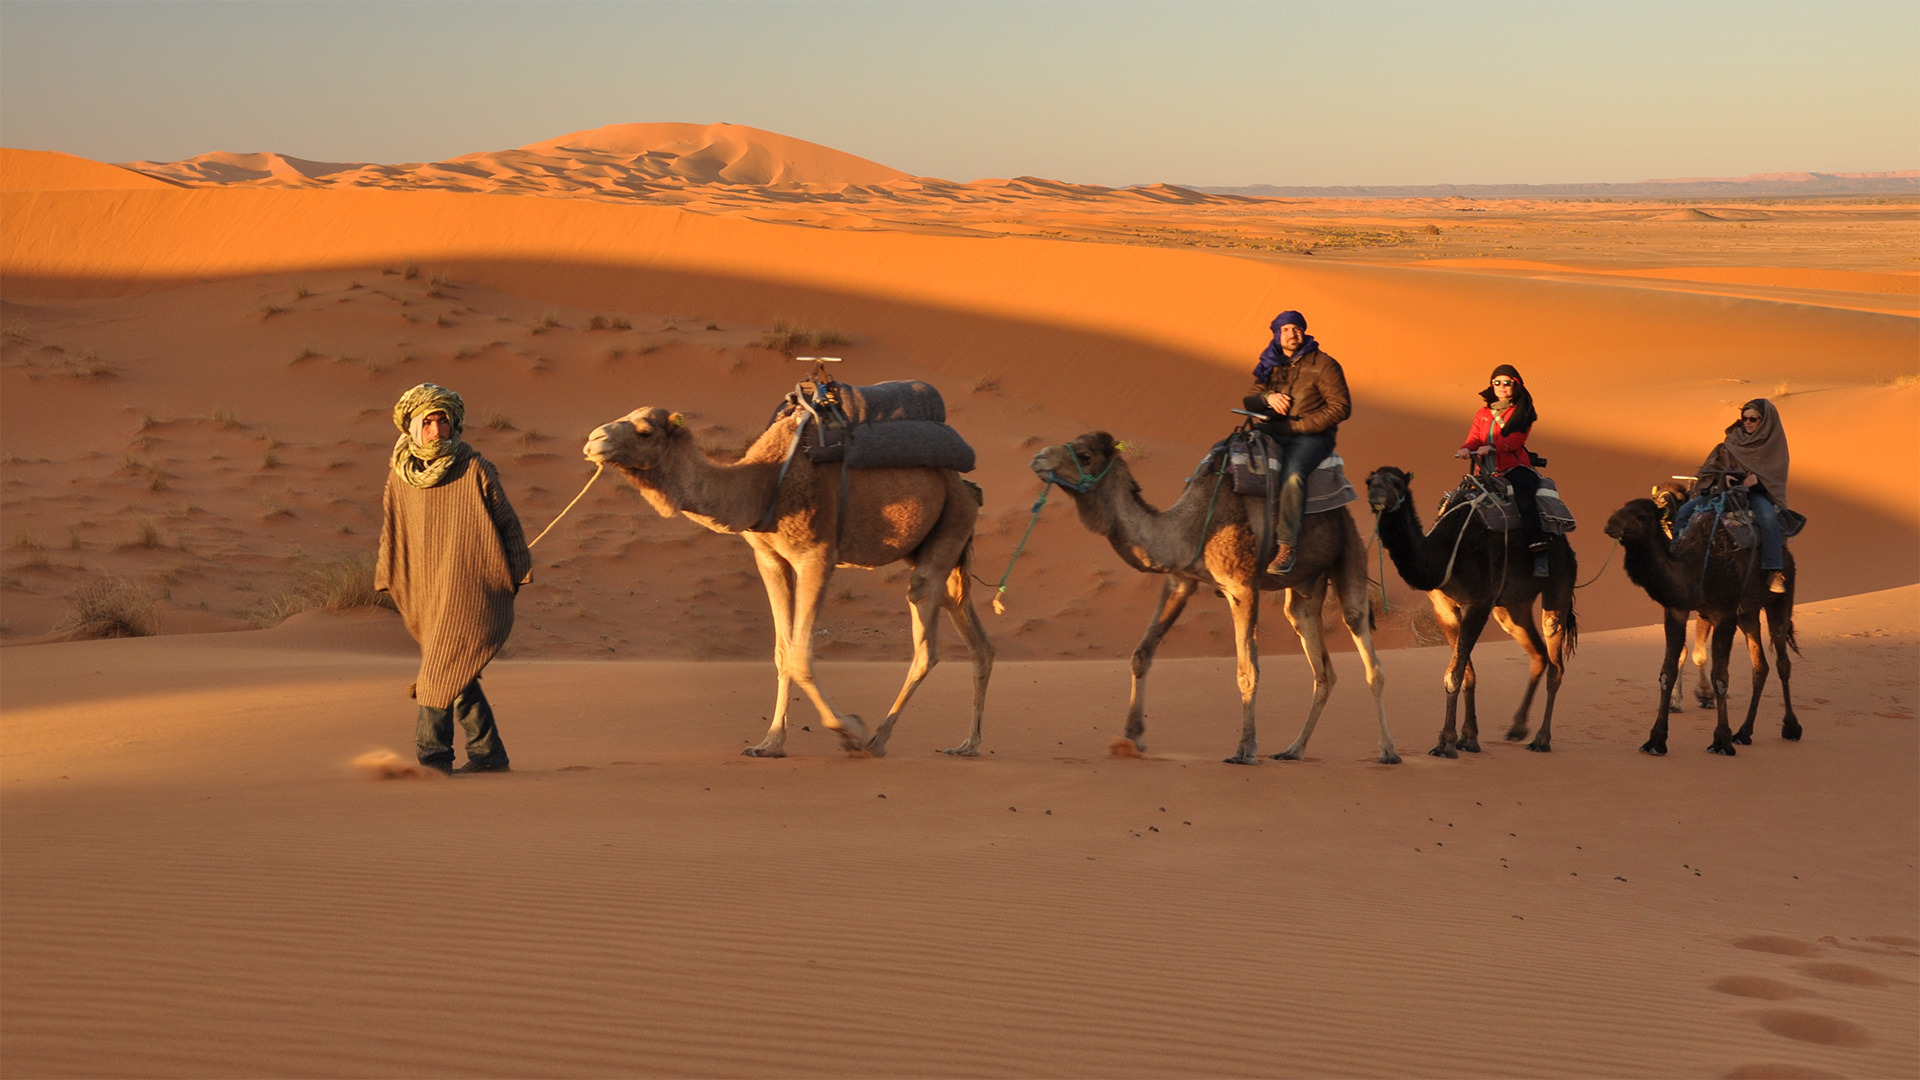 Жизнь и быт в пустыне. Бедуин с верблюдом в пустыне. Бедуины Аравийского полуострова. Пустыня Раджастхан. Бедуины Марокко.